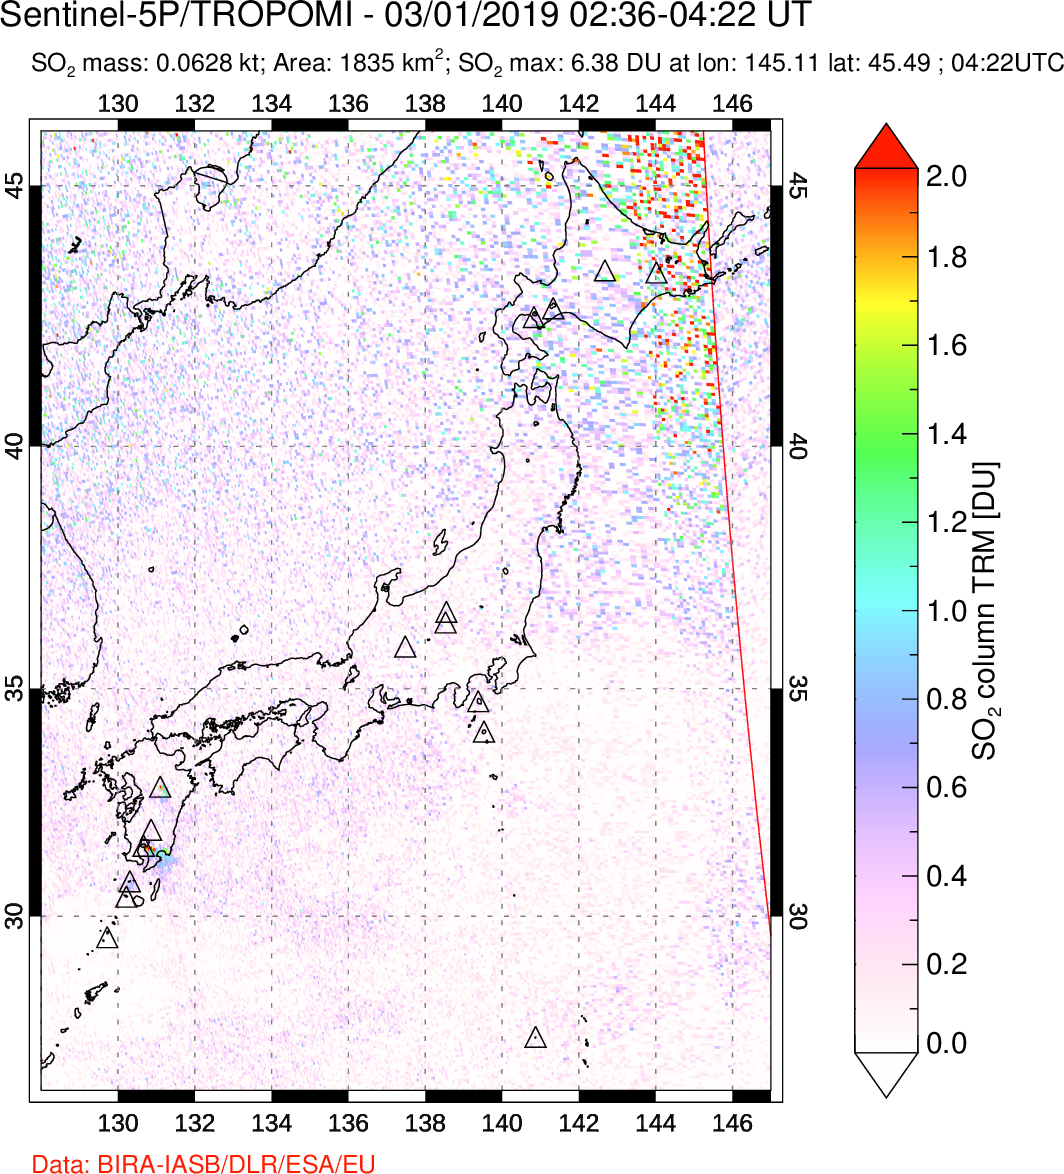 A sulfur dioxide image over Japan on Mar 01, 2019.